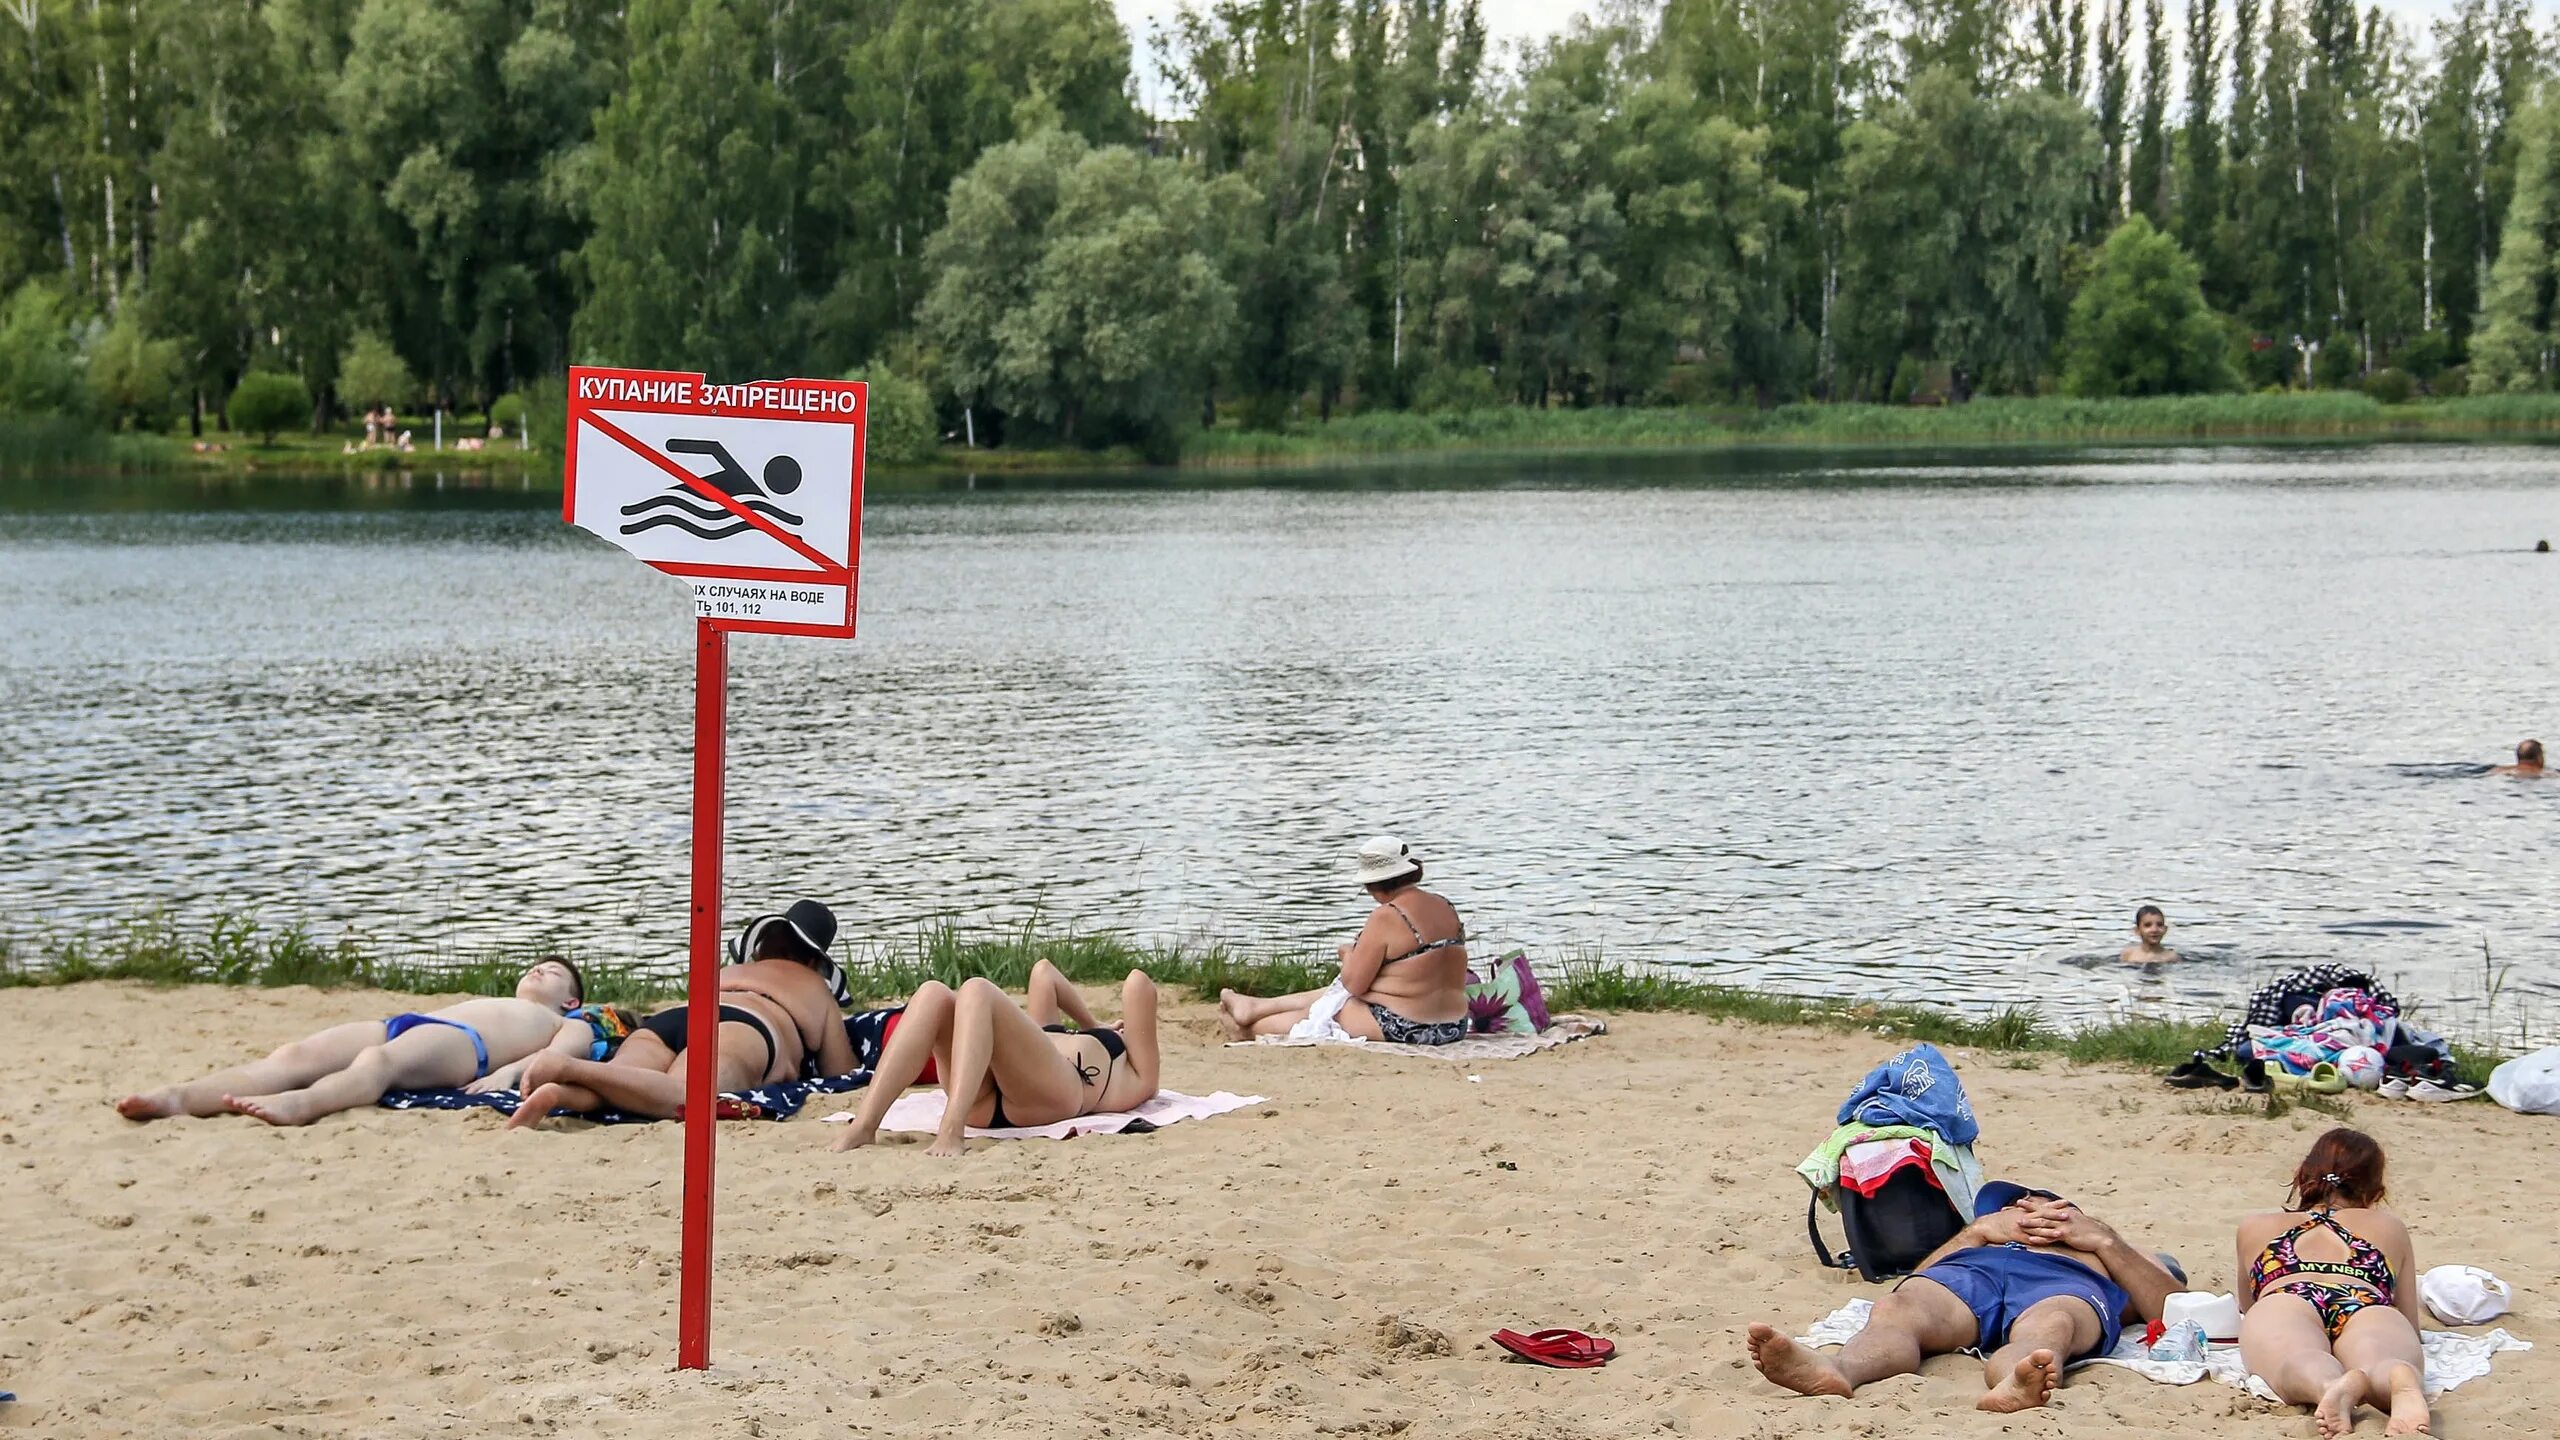 Нижний Новгород места для купания. Нельзя купаться в озере. Купание запрещено озеро. Самое опасное озеро. Почему в озере купались